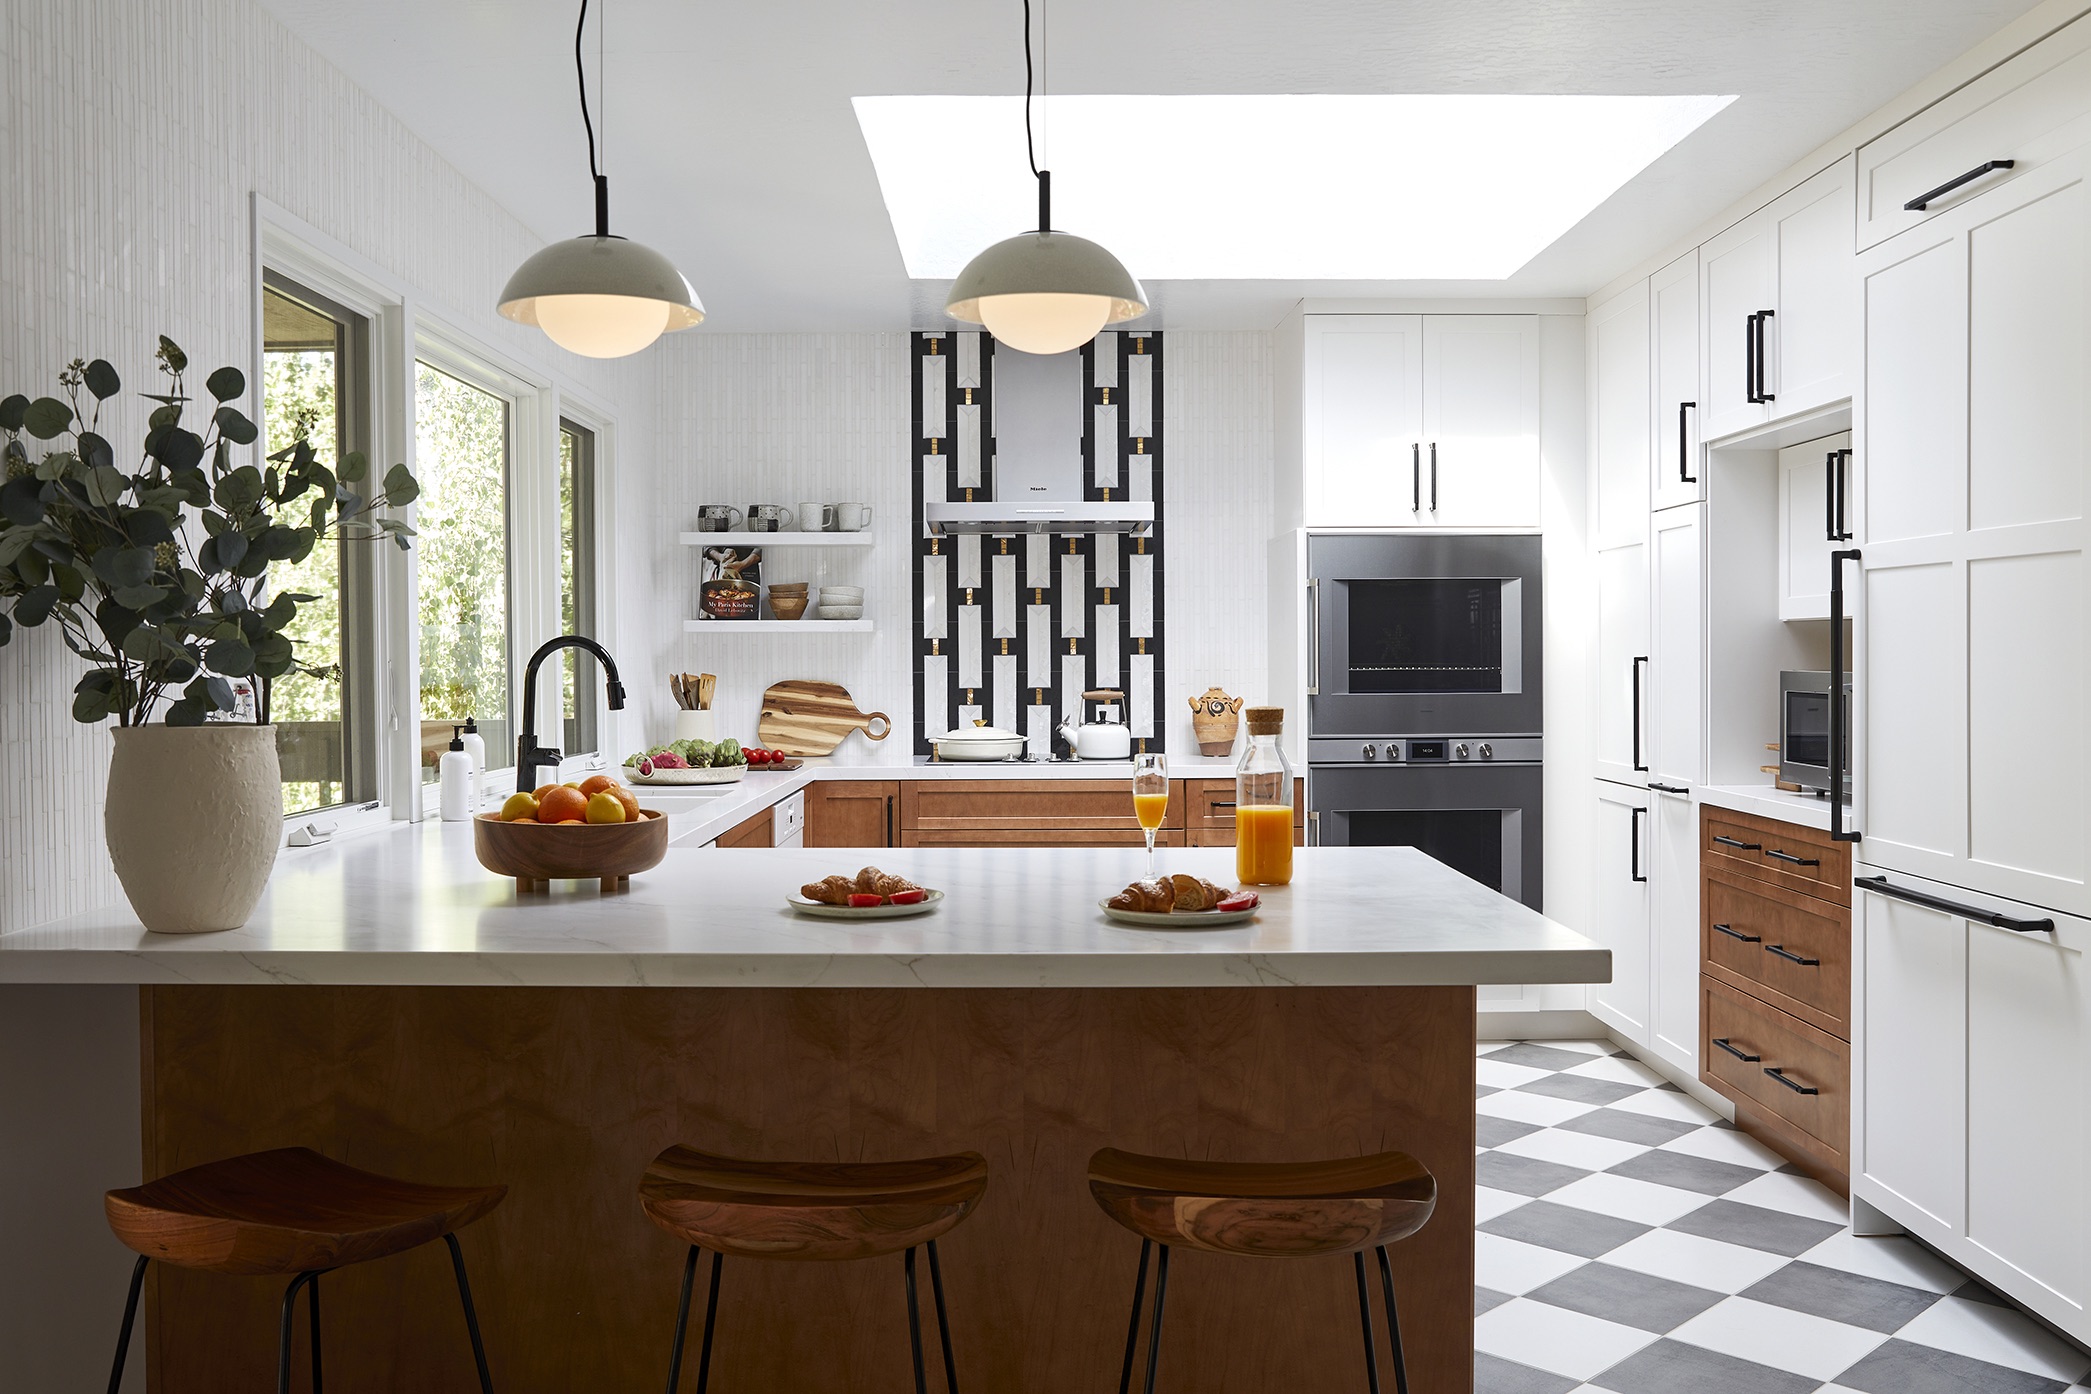 Home renovation in Los Altos Hills by Bay Area interior designer, Kanika Design - 01